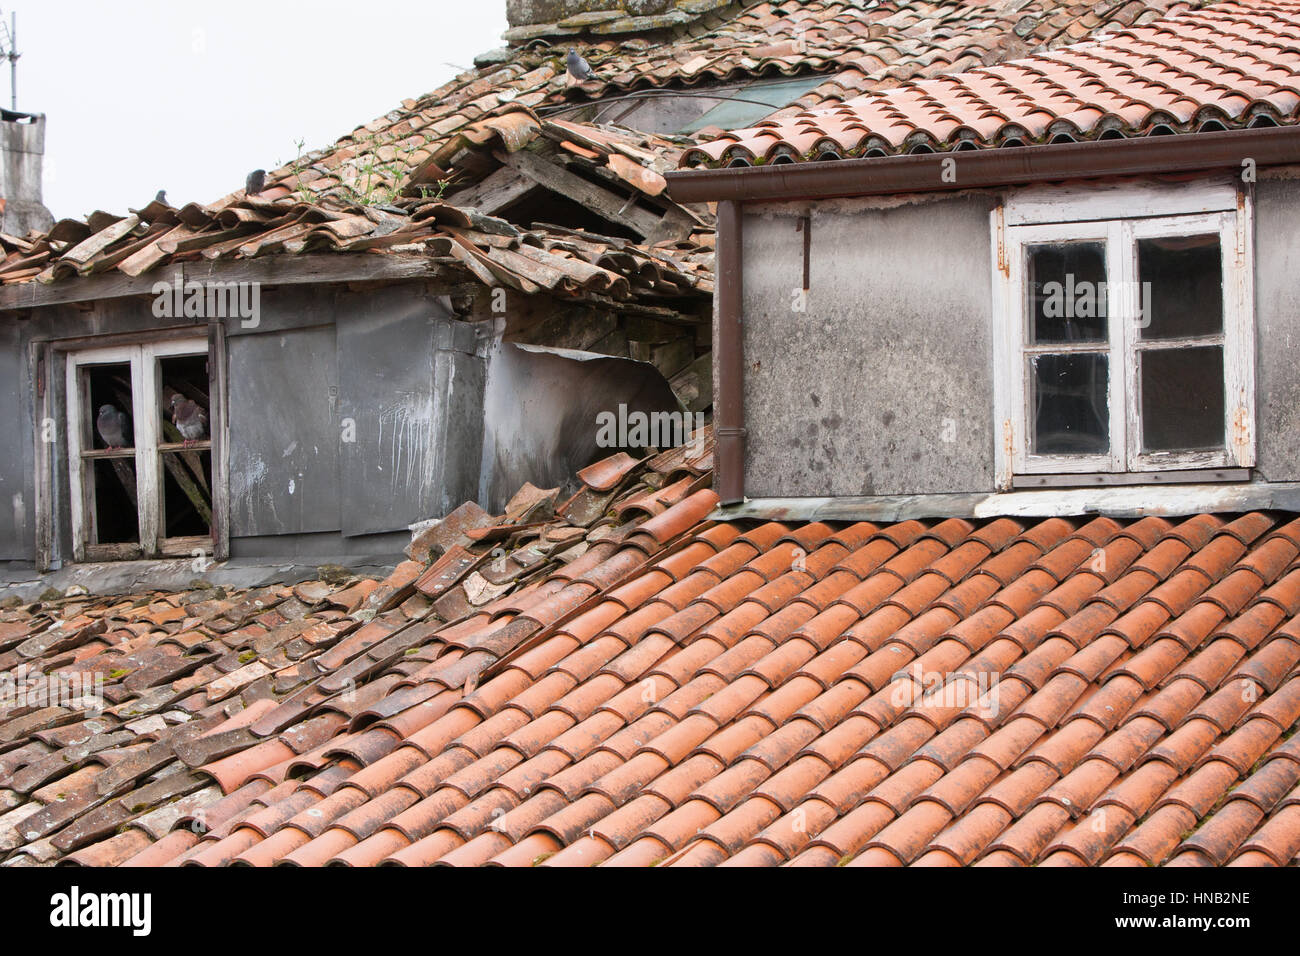 Tetto in necessità di riparazione.piastrelle rotte sulla vecchia proprietà che ha bisogno di manutenzione.Un progetto per mantenere.Santiago centro,Galizia,Spagna,l'Europa. Foto Stock